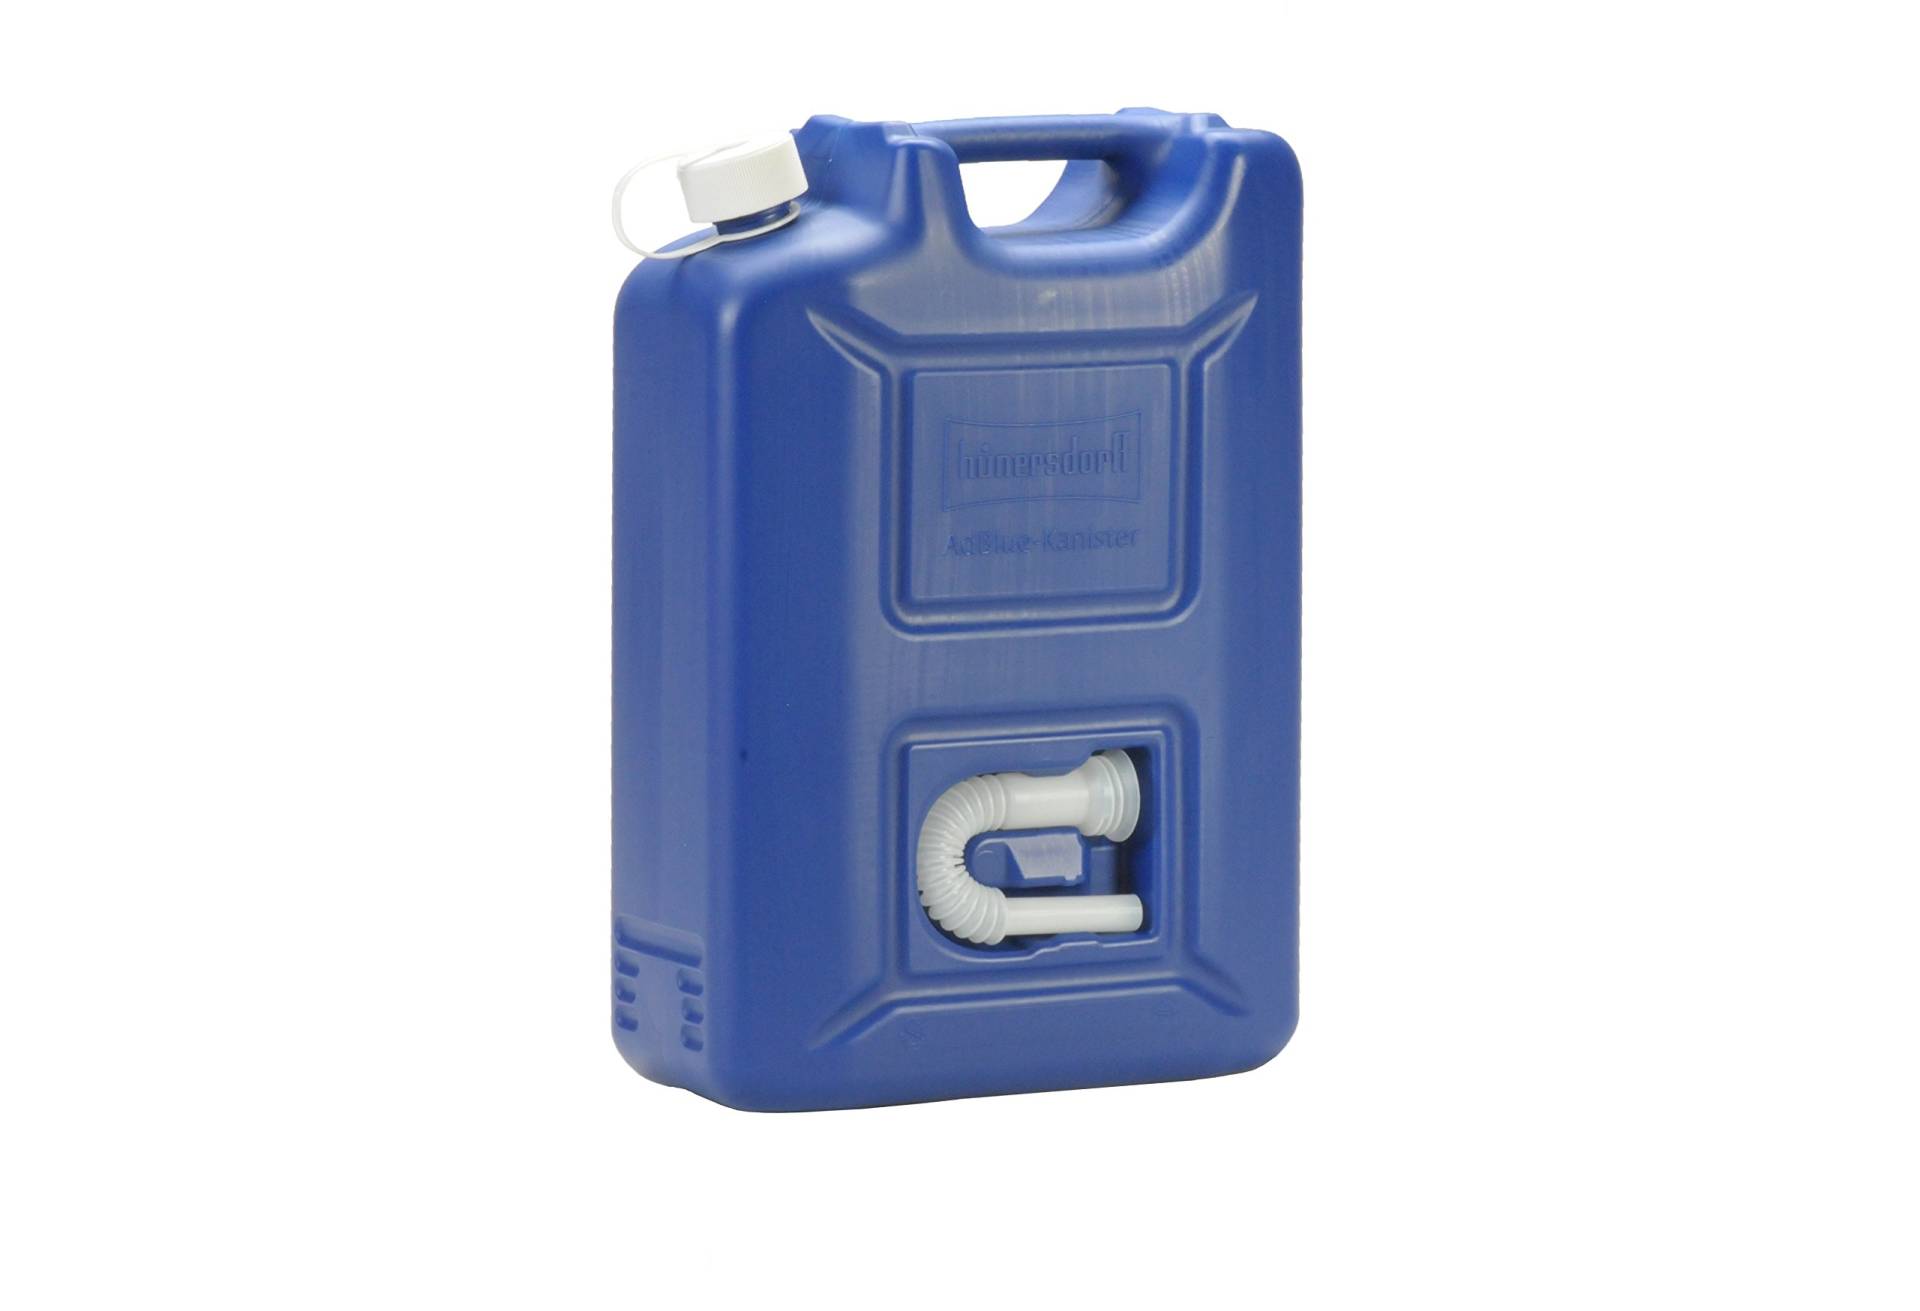 hünersdorff AdBlue Kanister 20 l, ideal zur Betankung an AdBlue-PKW-Zapfsäulen, Mehrwegkanister mit Auslaufrohr, passt in AdBlue Tankstutzen, unbefüllt von hünersdorff